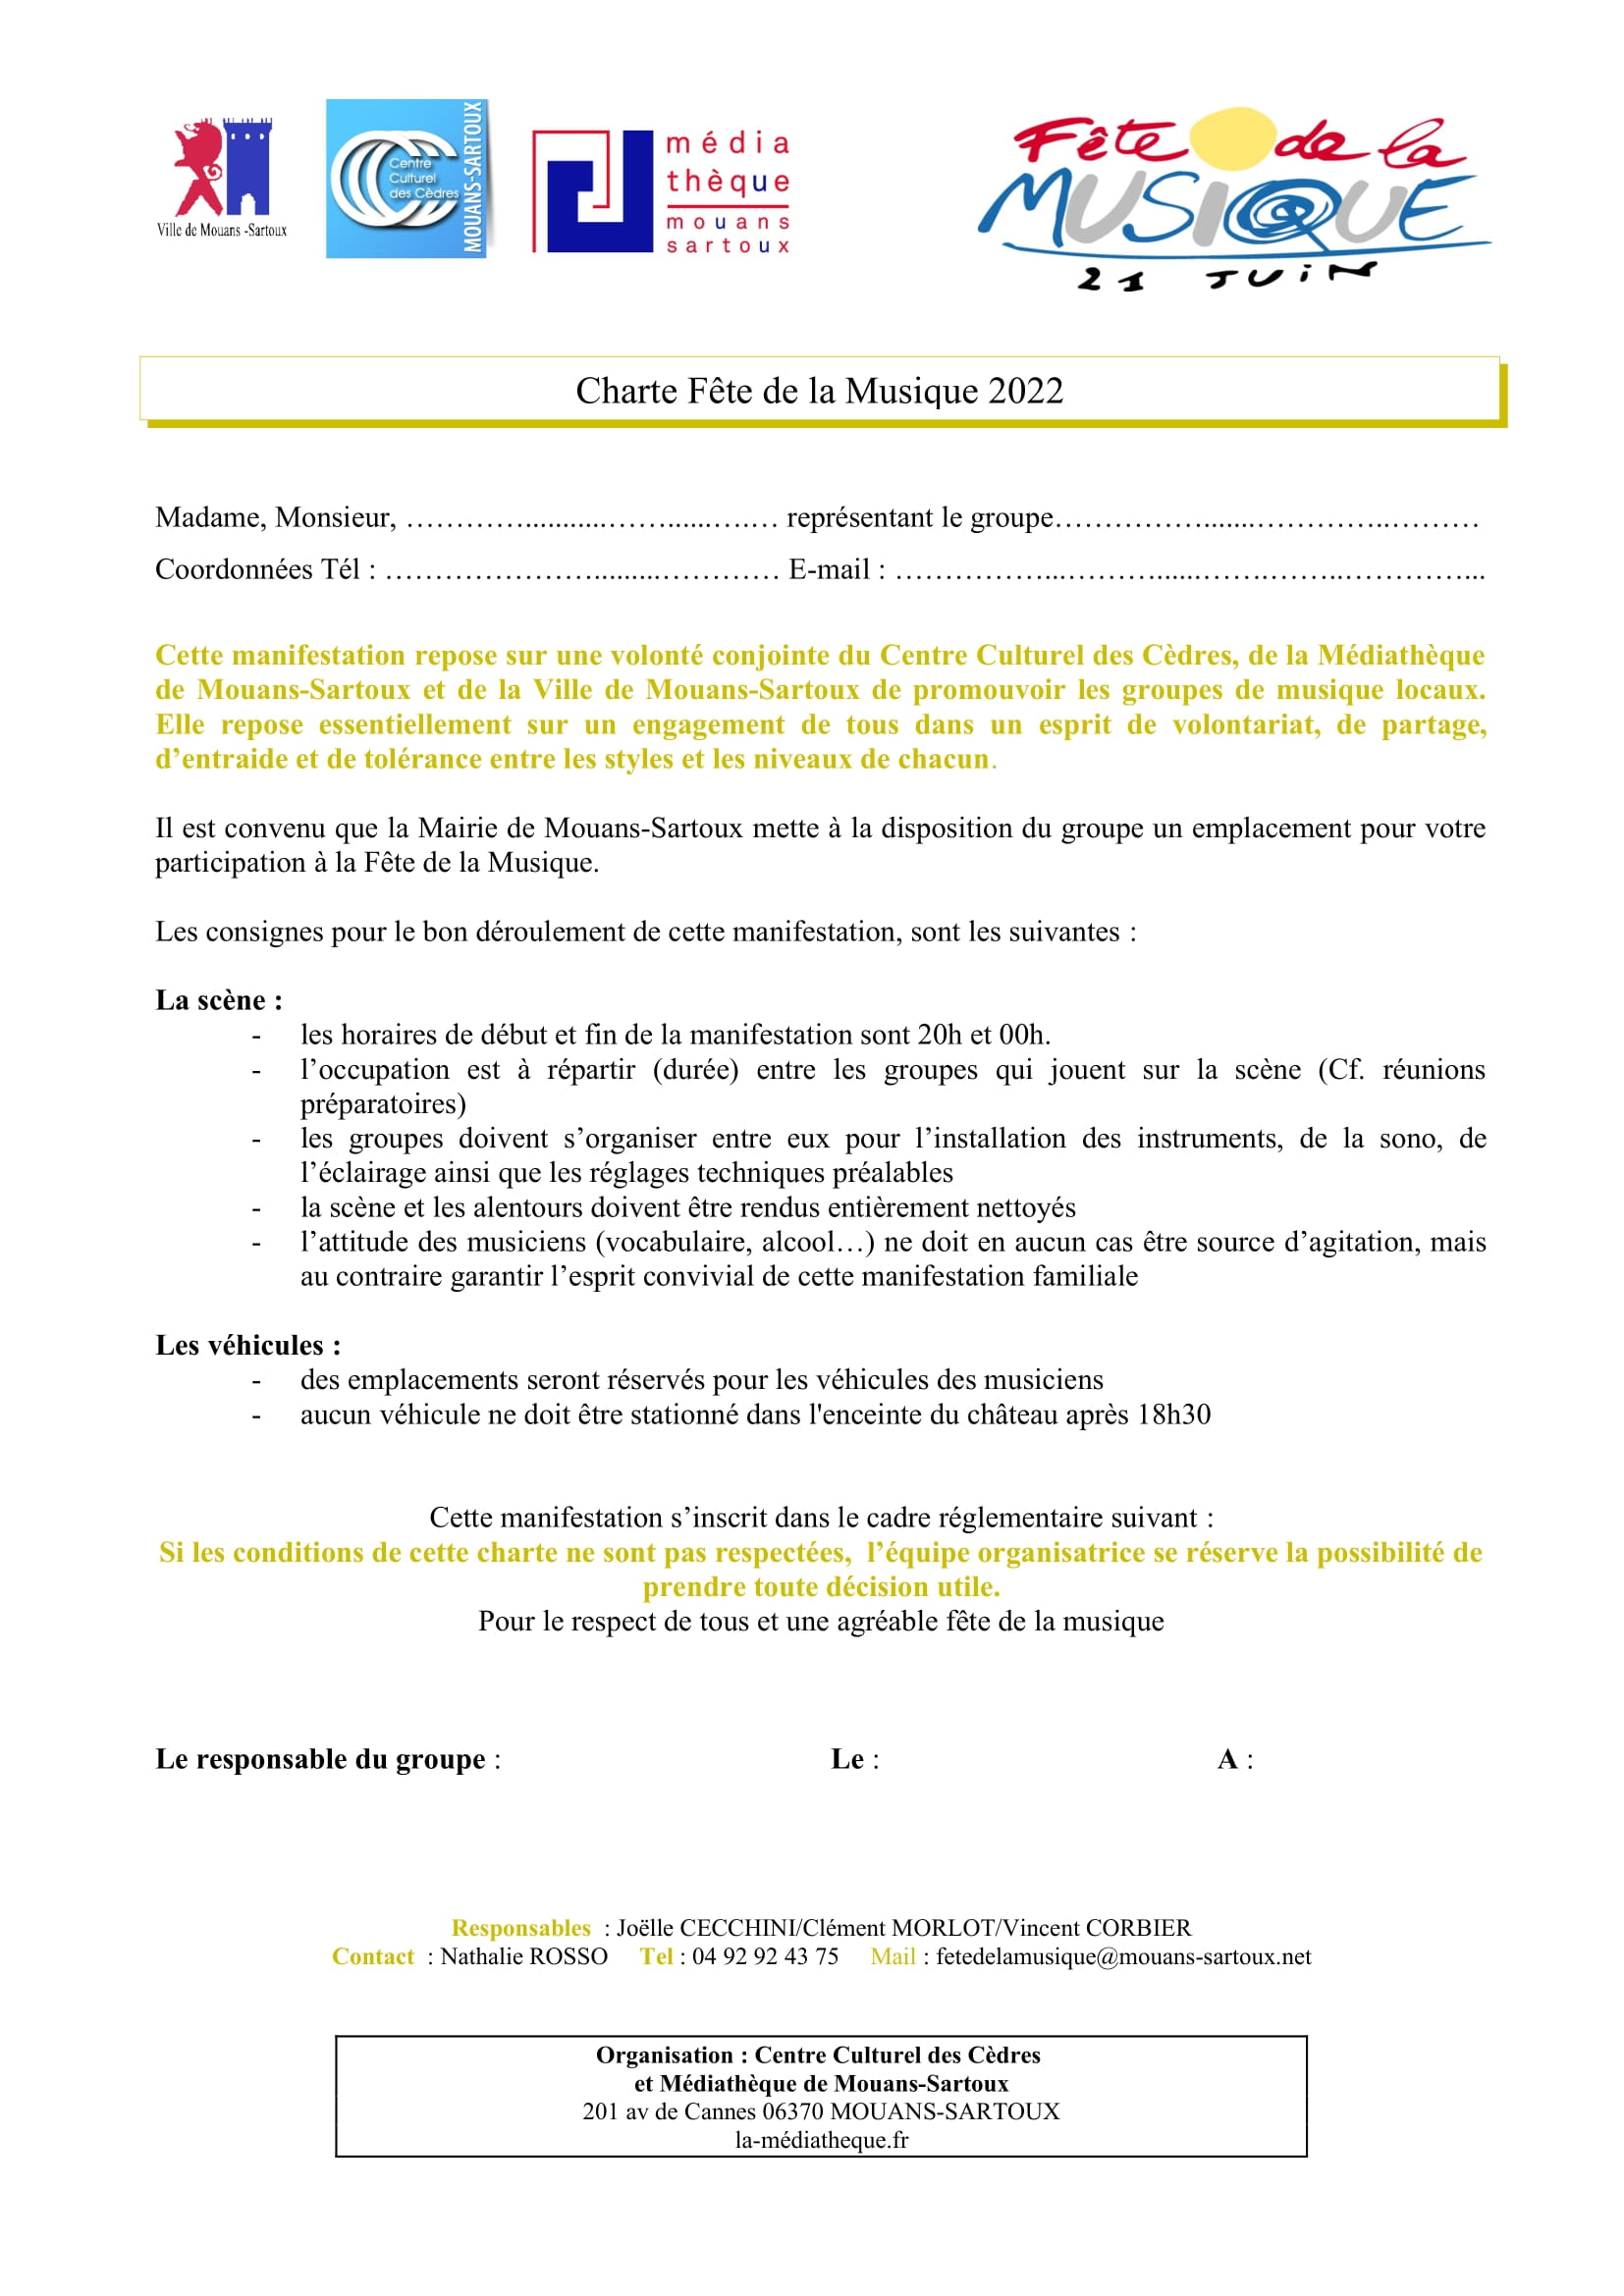 Charte Fete de la musique 2022 Médiathèque Mouans Sartoux